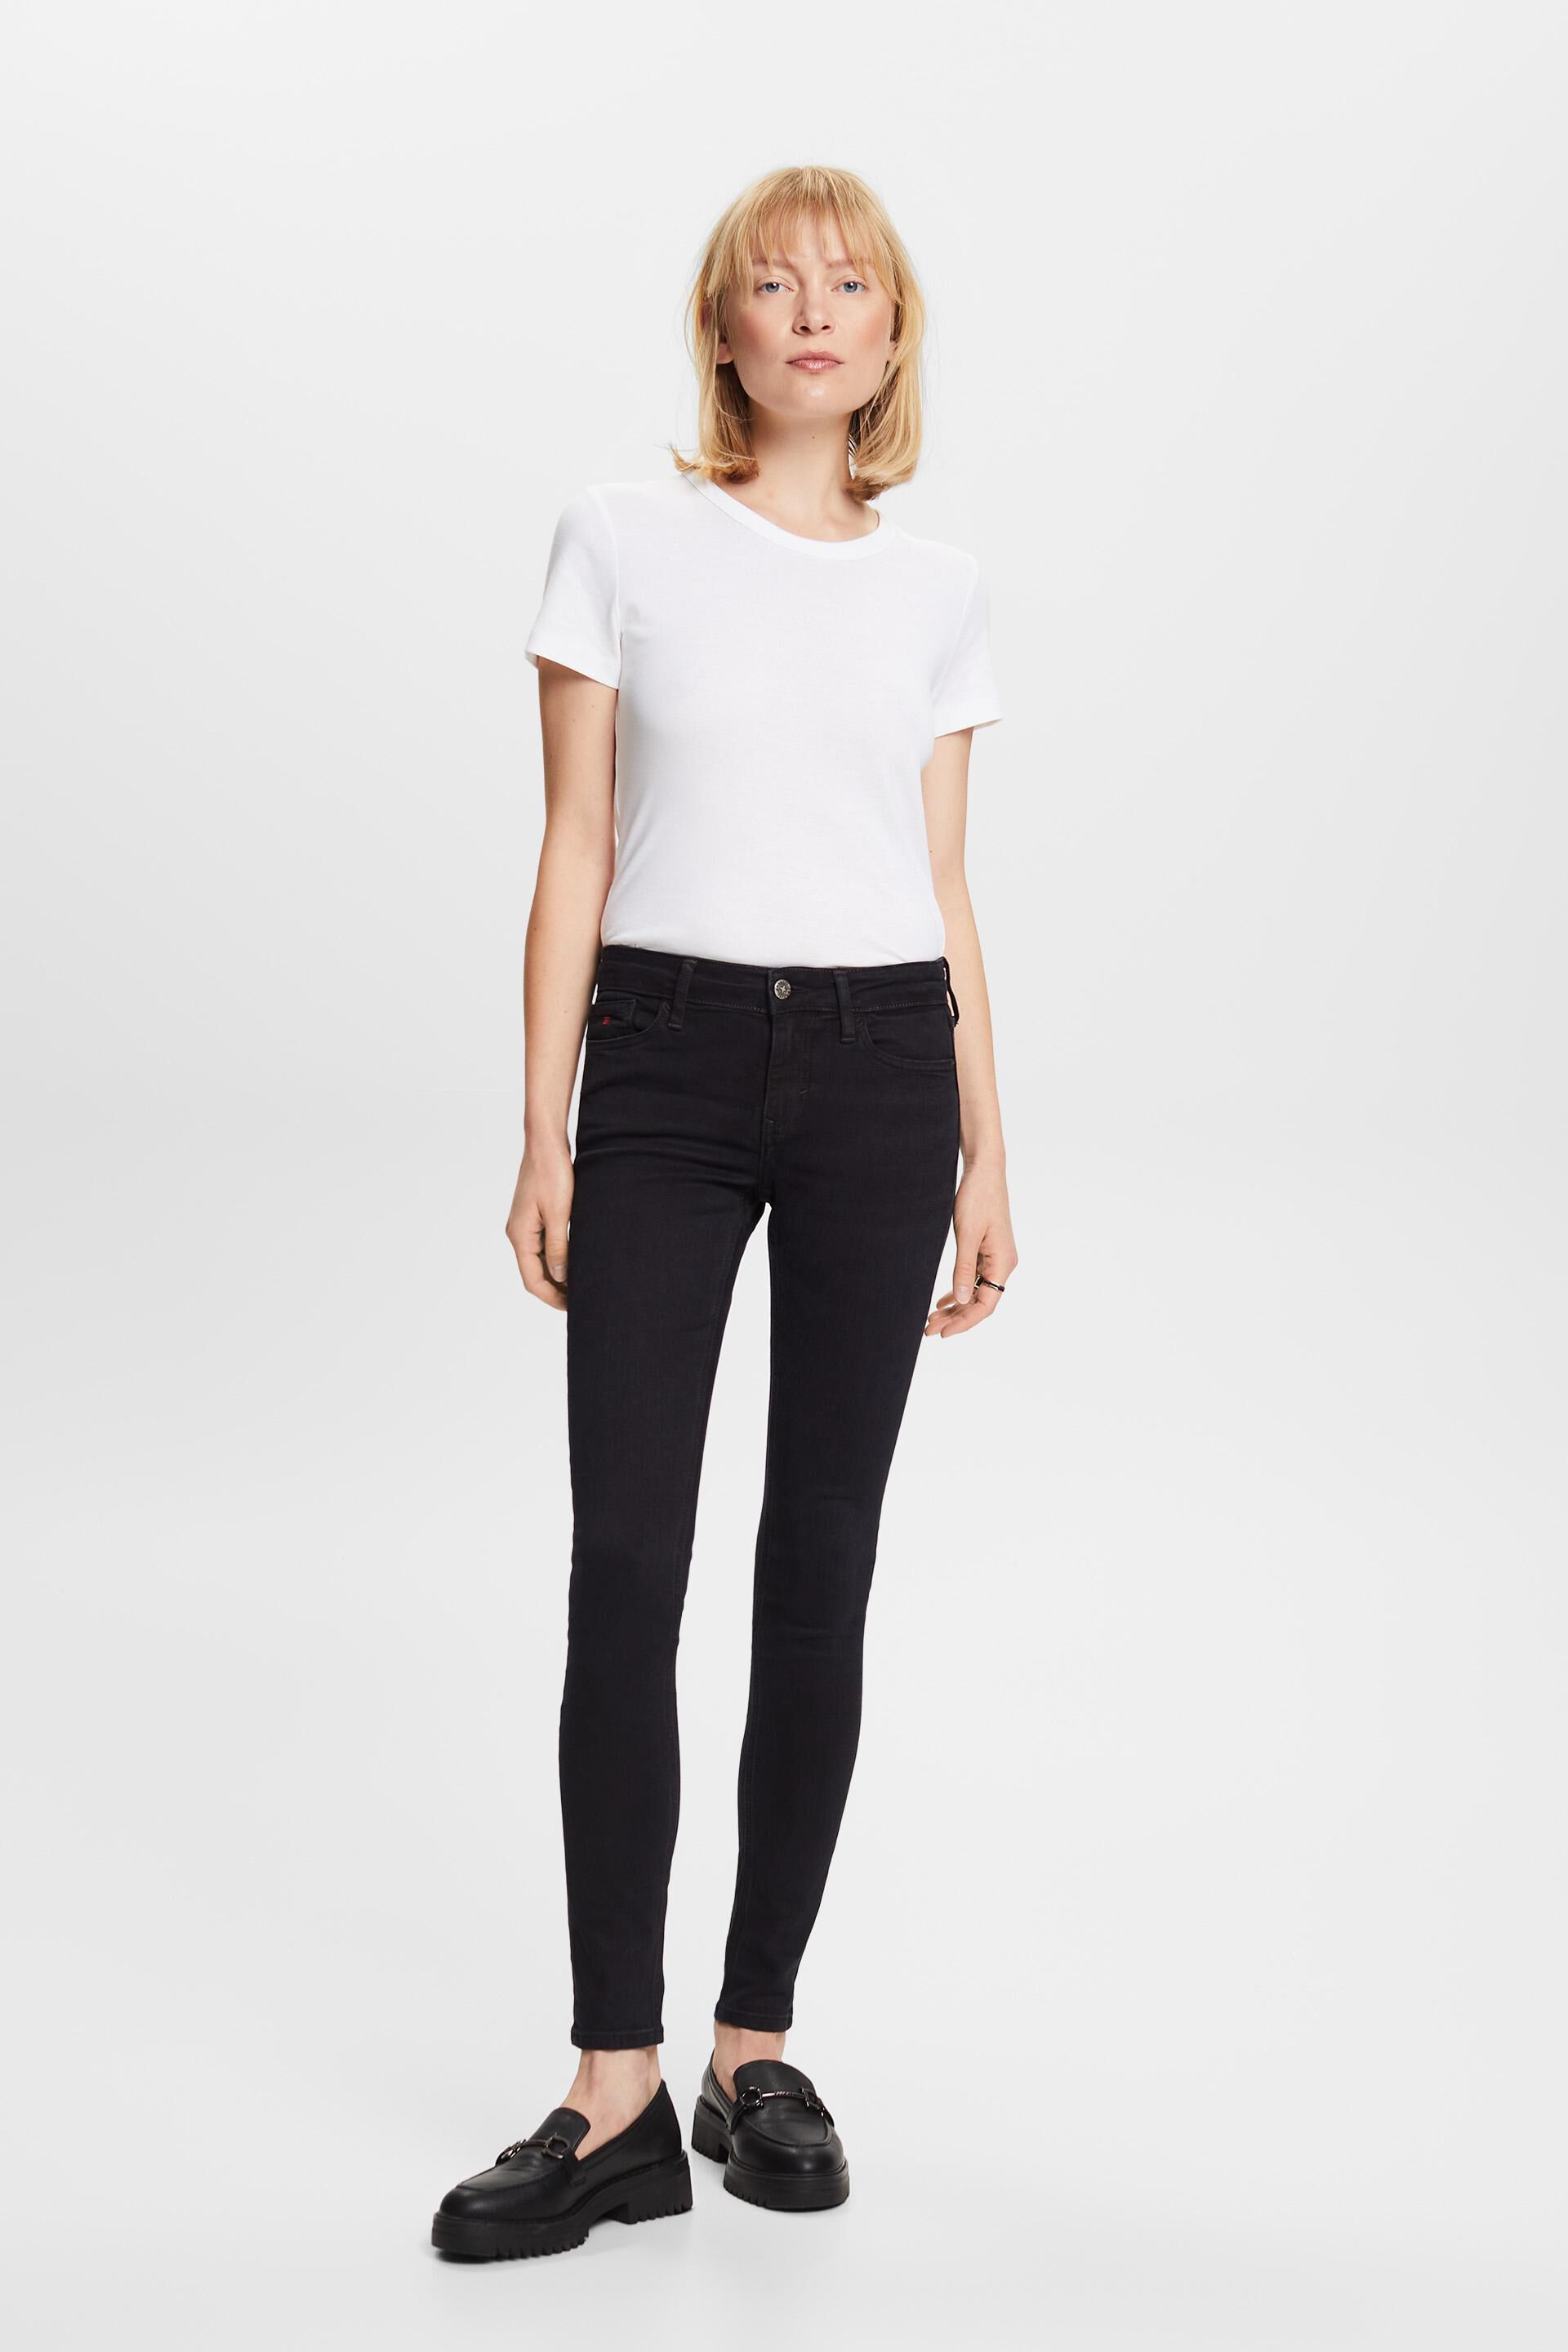 Esprit Damen Premium mid-rise skinny fit jeans